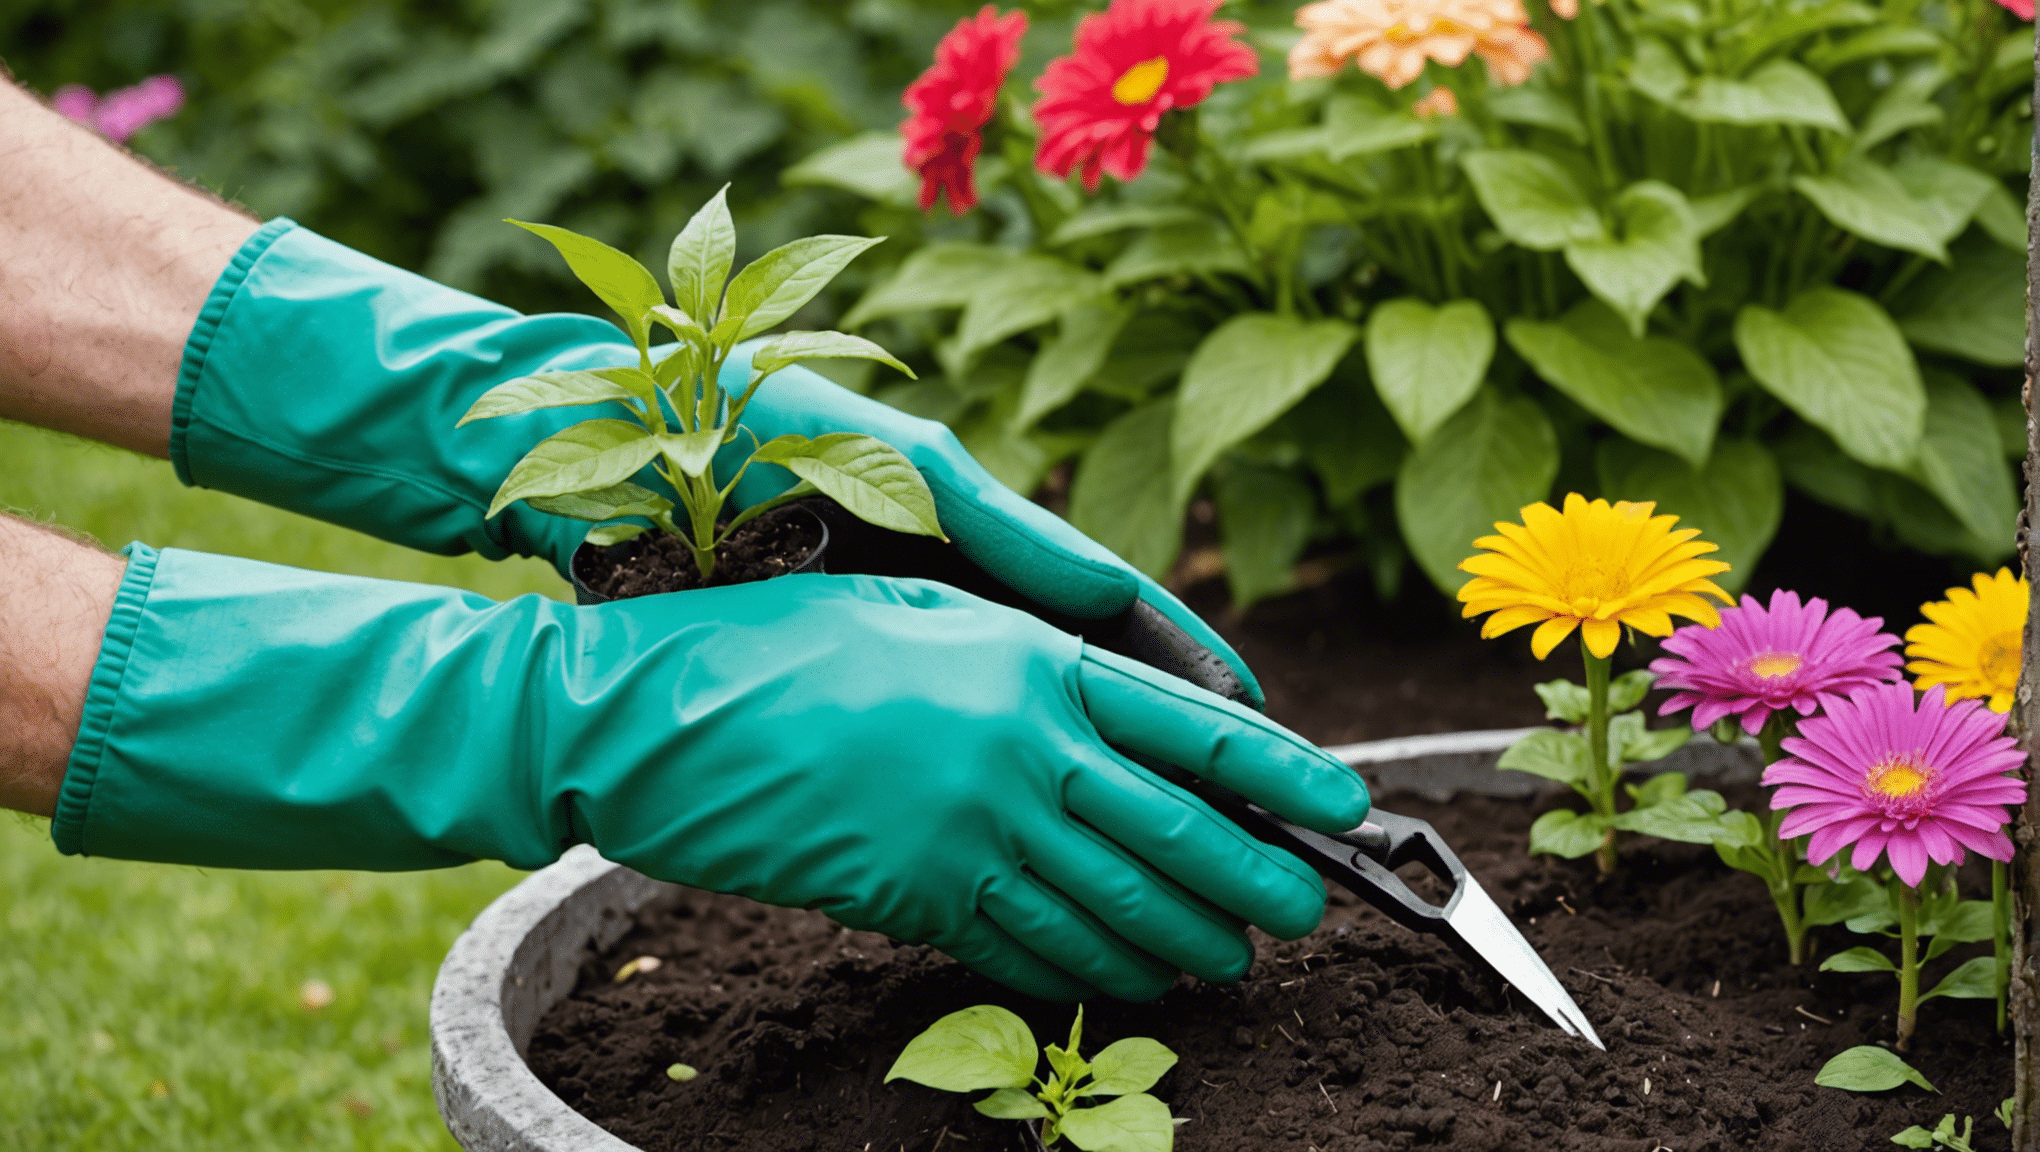 objavte pohodlie záhradníckych rukavíc s pazúrmi a premeňte svoje záhradnícke zážitky jednoducho a efektívne.